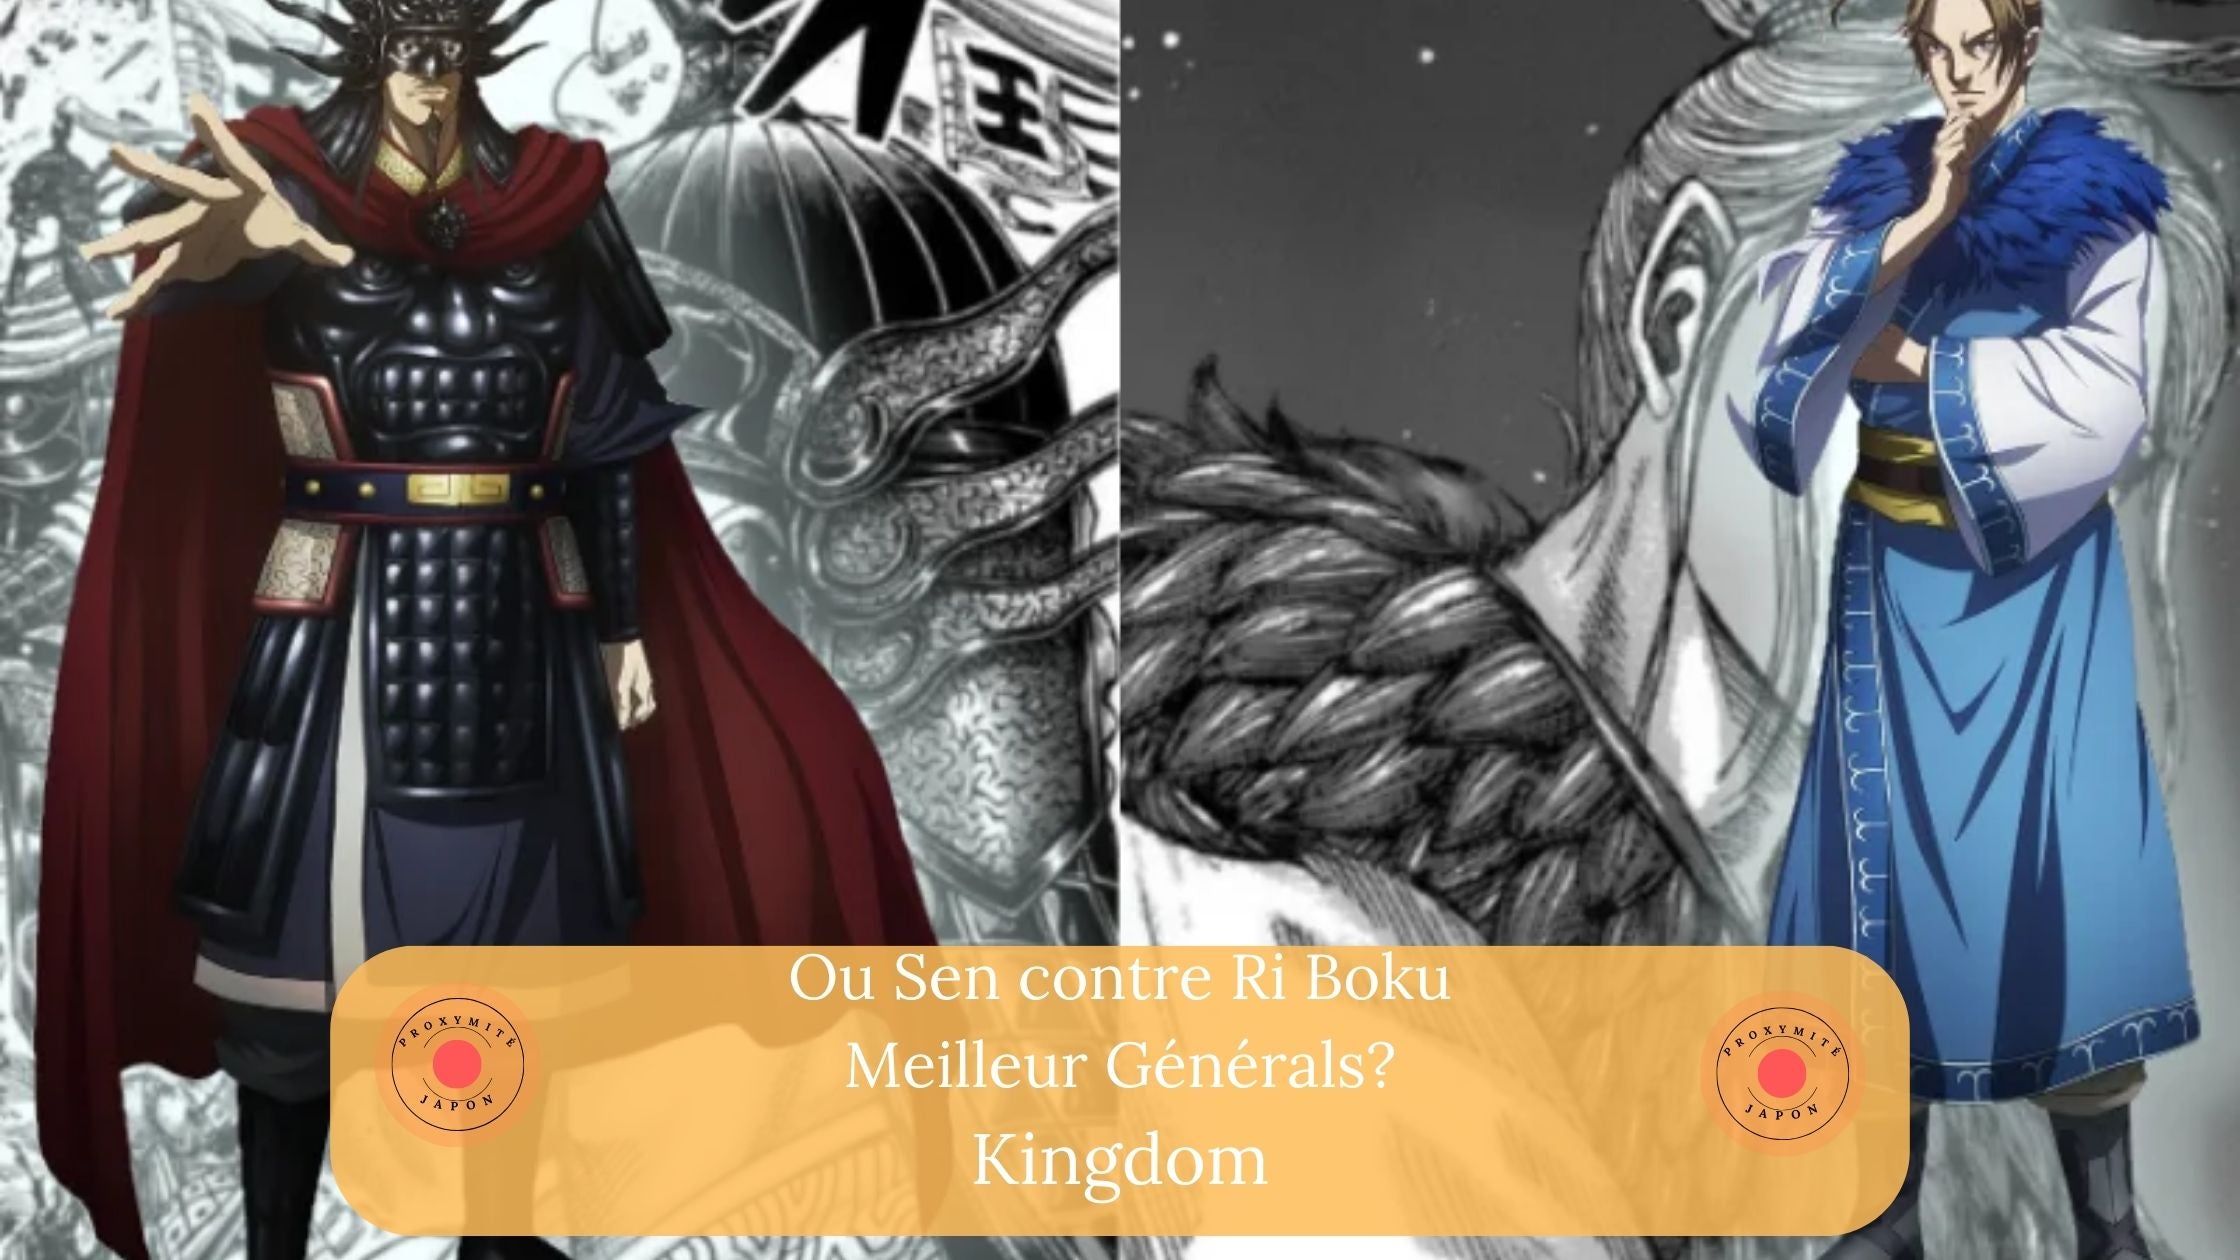 Ou Sen contre Ri Boku : qui est le meilleur grand général dans Kingdom ?